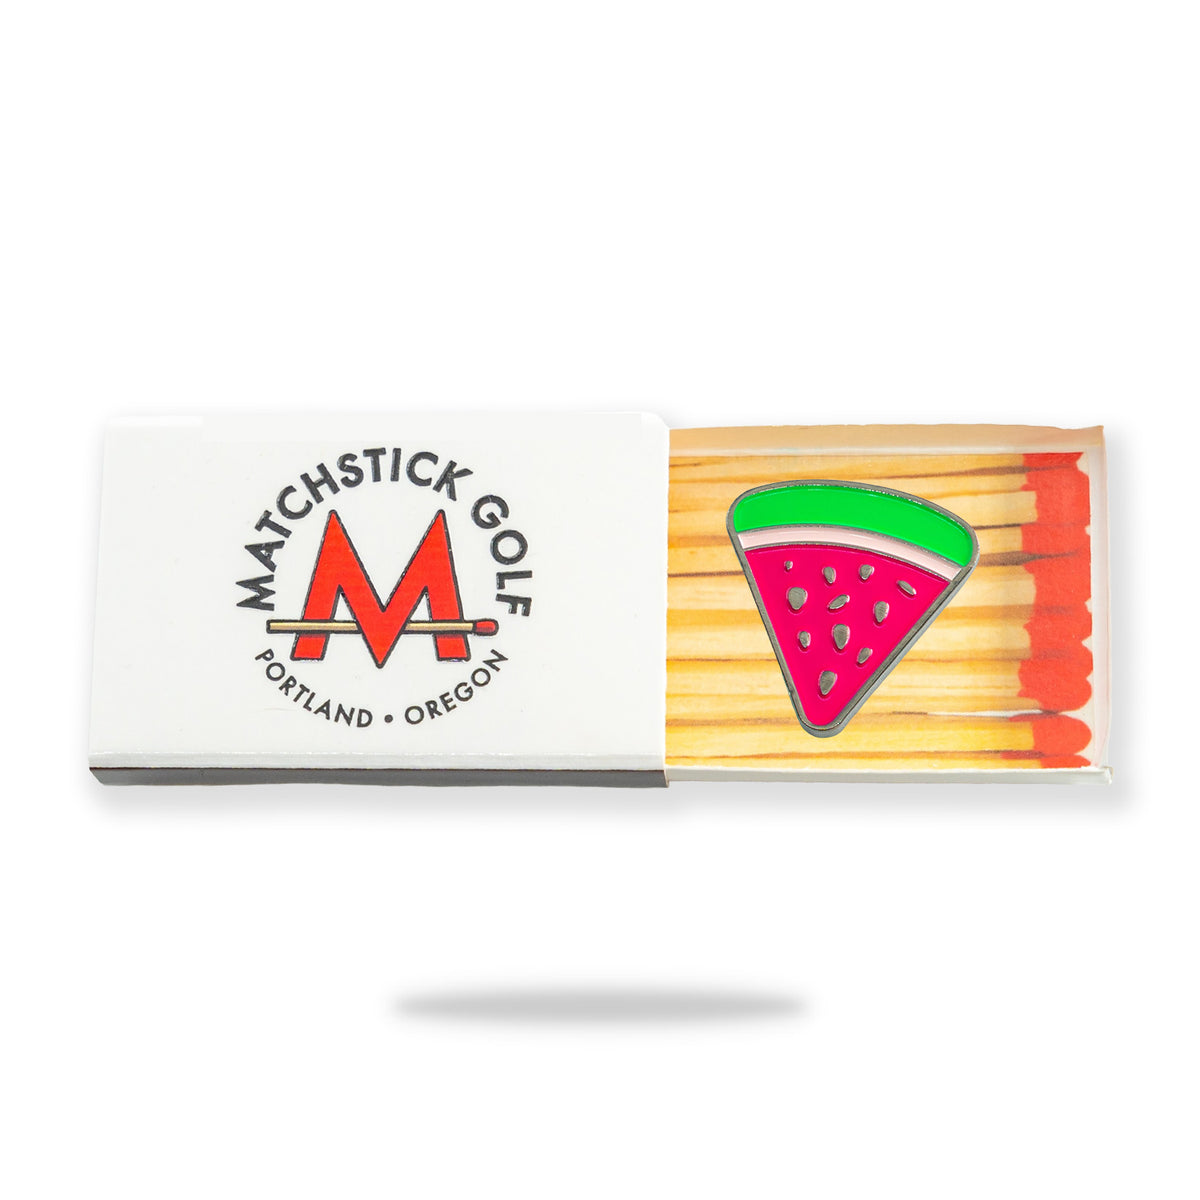 watermelon slice golf ball marker matchbox packaging